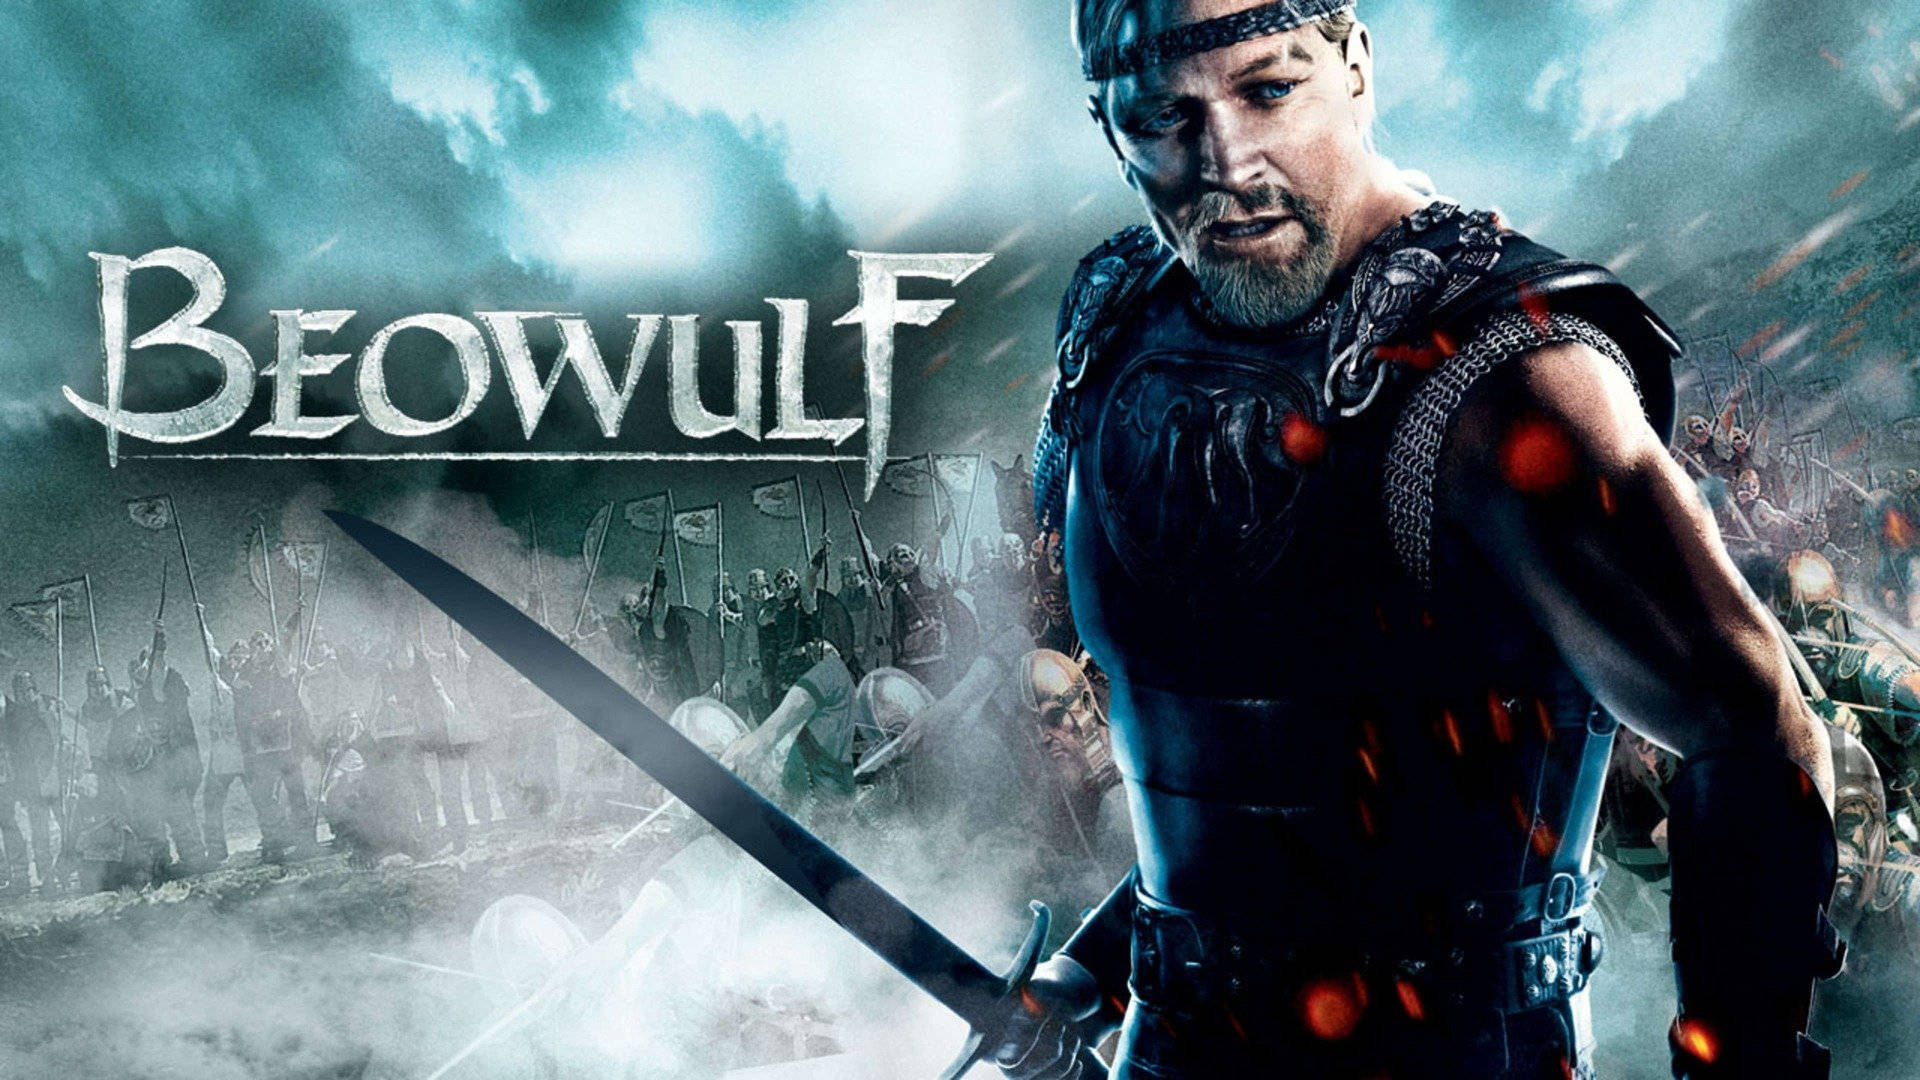 Beowulf Sword Posing 2007 Action Film Wallpaper